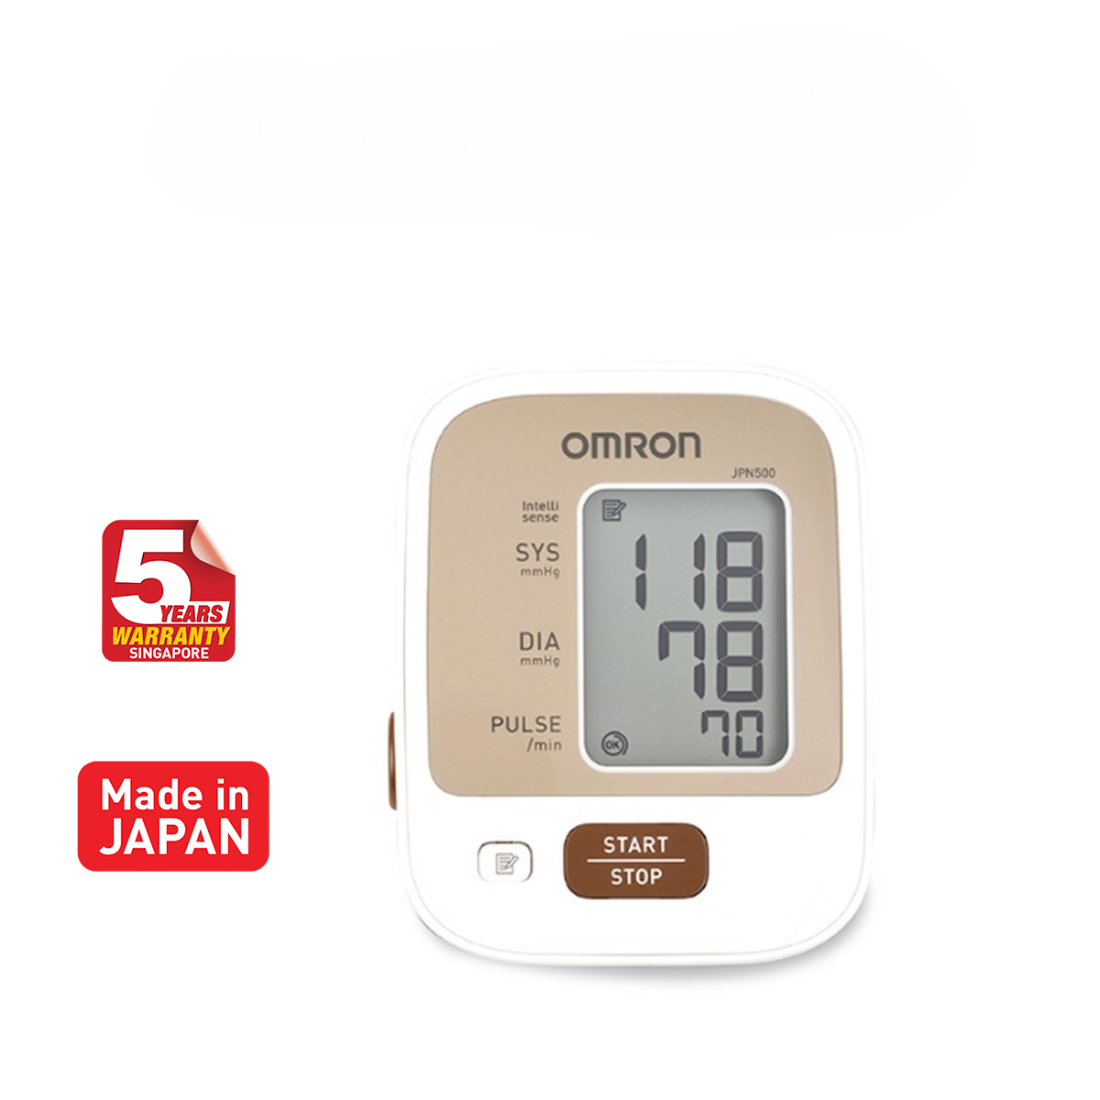 OMRON Upper Arm Blood Pressure Monitor JPN-500